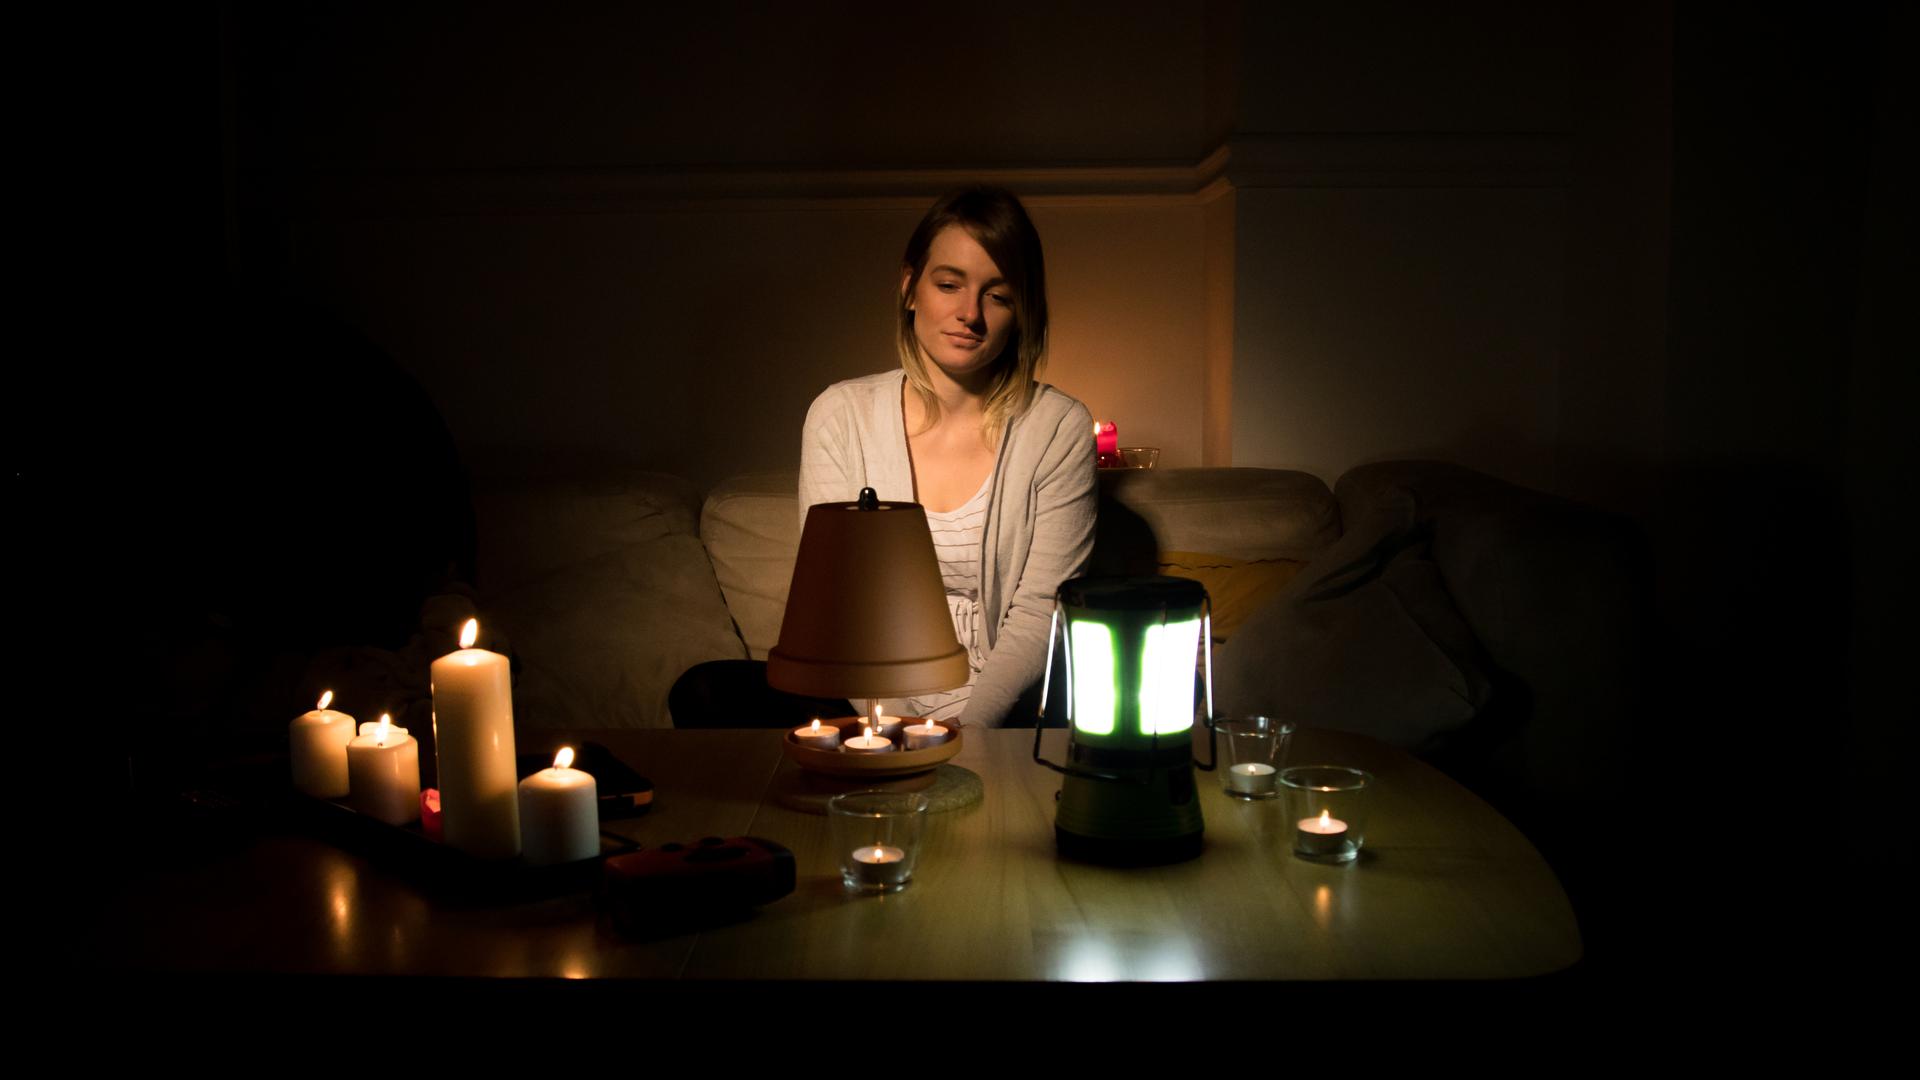 Zum Themendienst-Bericht von Markus Peters vom 9. November 2020: Will man während eines Stromausfalls nicht im Dunkeln sitzen, sollte man daheim immer einen Grundvorrat an Kerzen und Teelichtern haben.